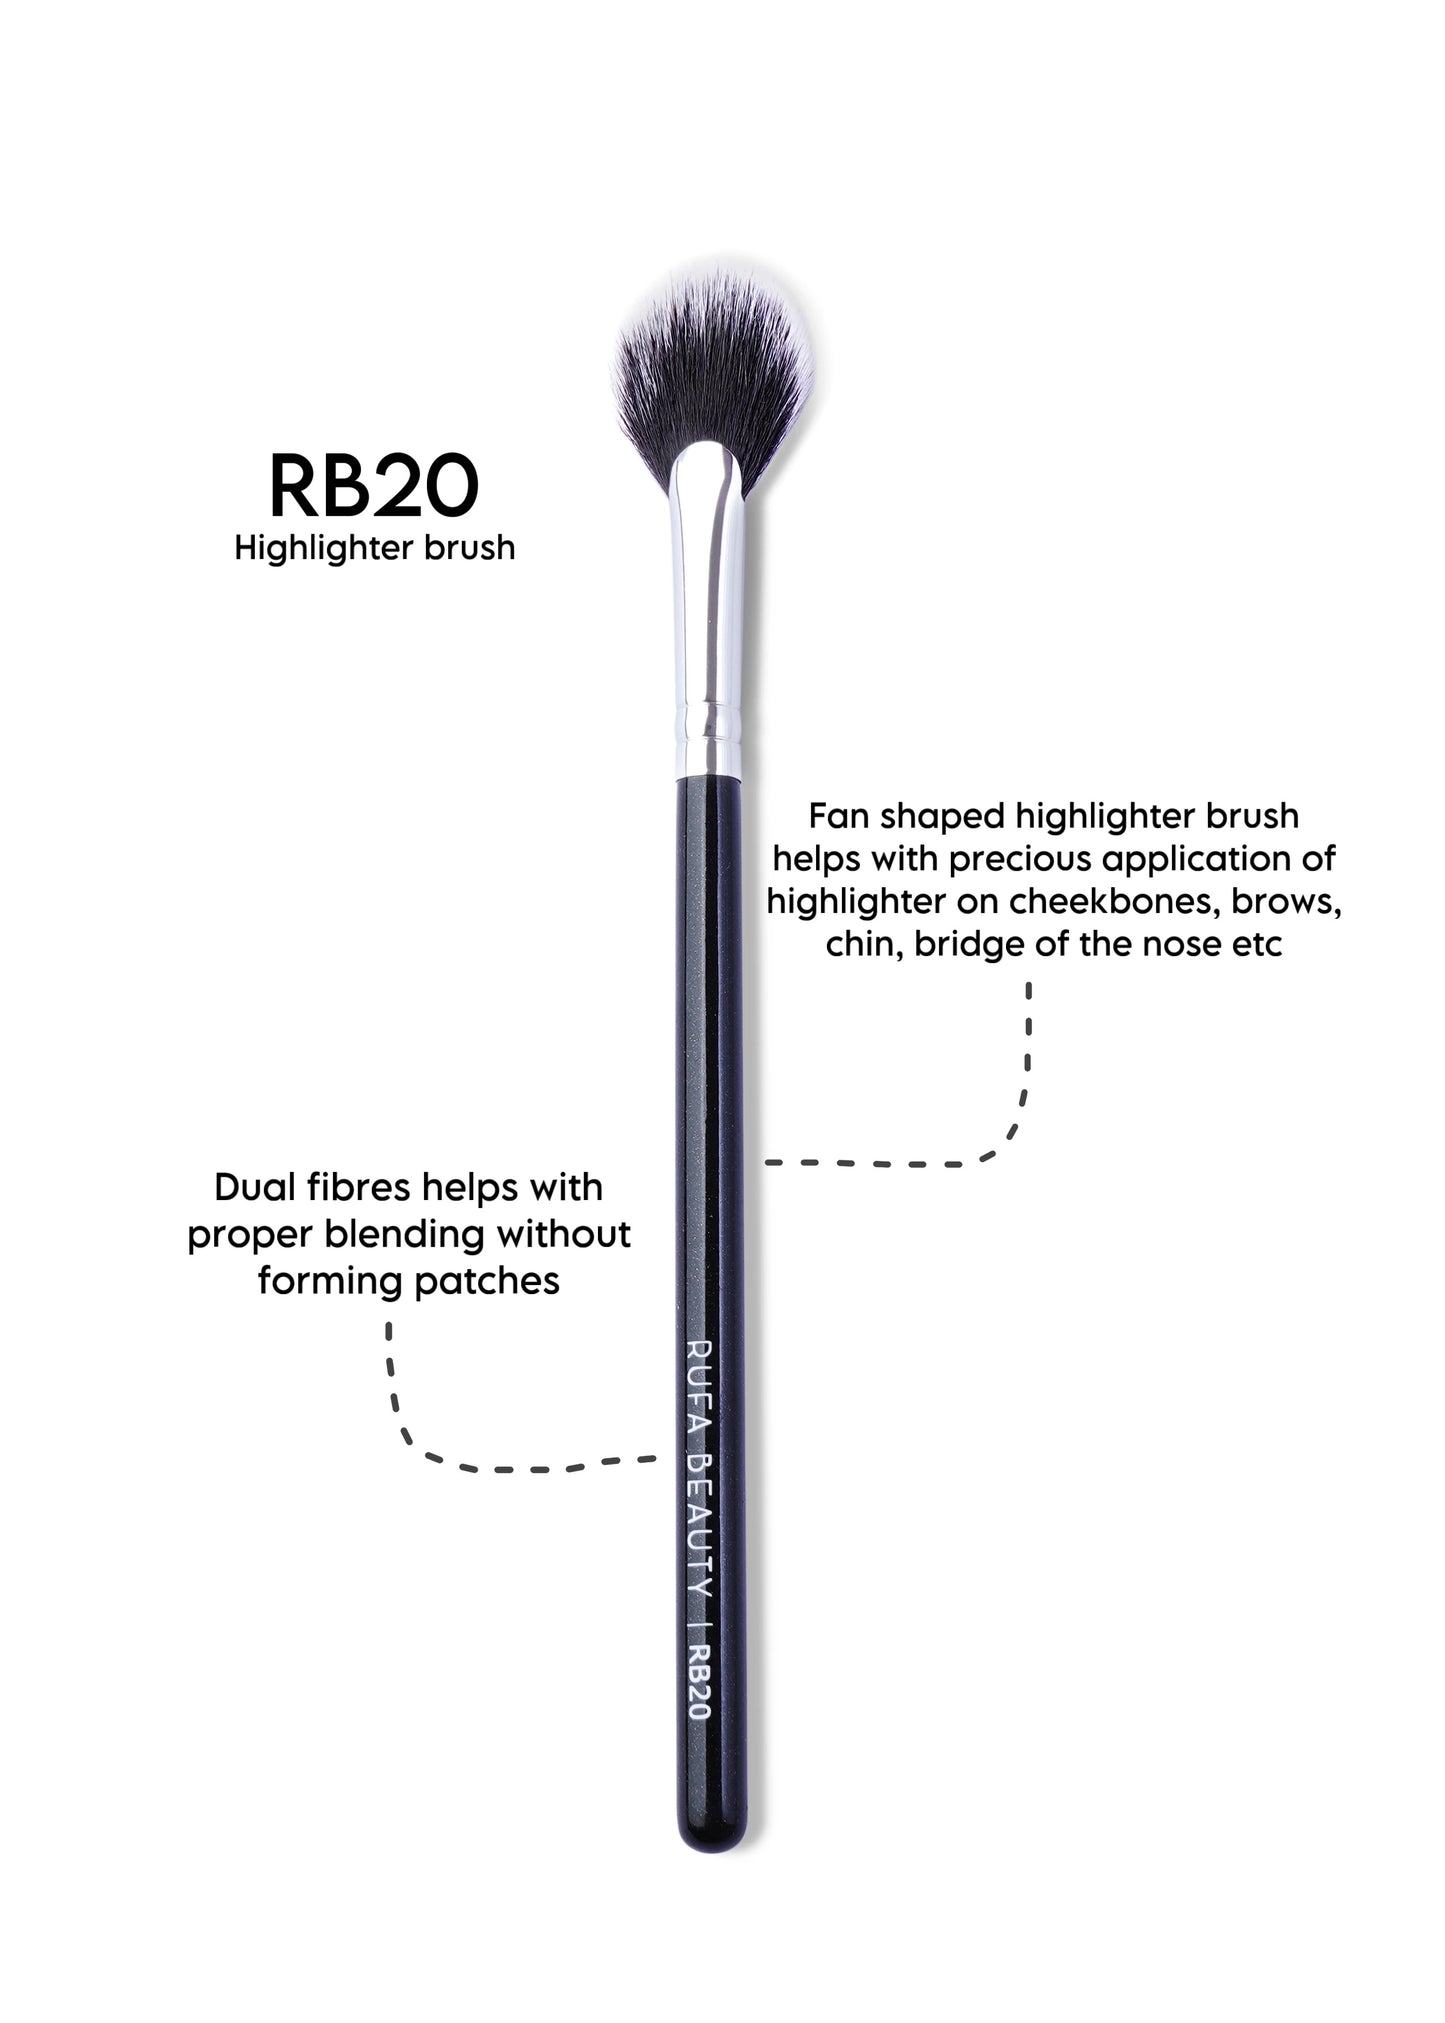 RB20 Highlighter Brush